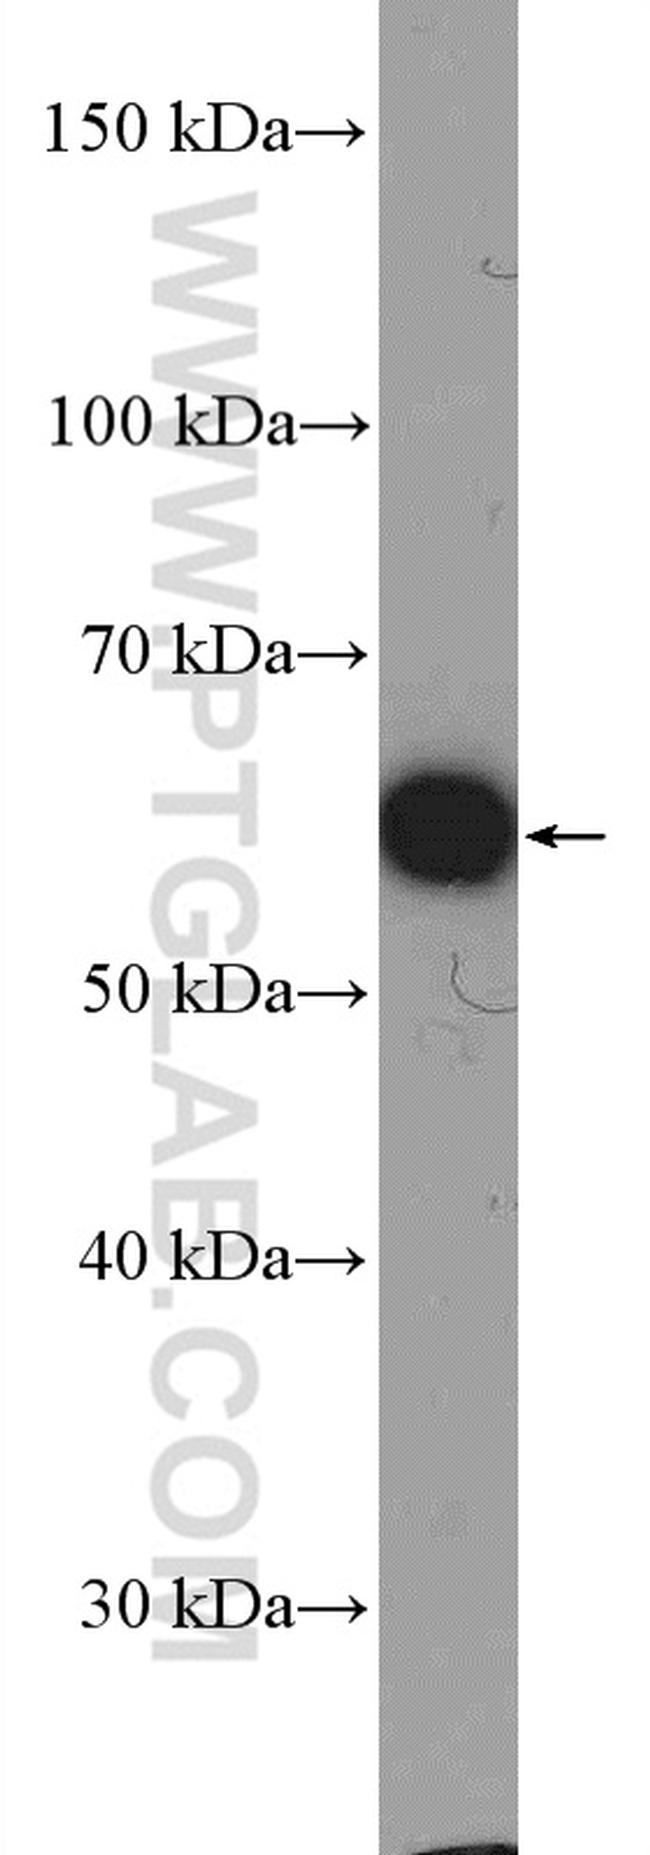 U2AF65 Antibody in Western Blot (WB)